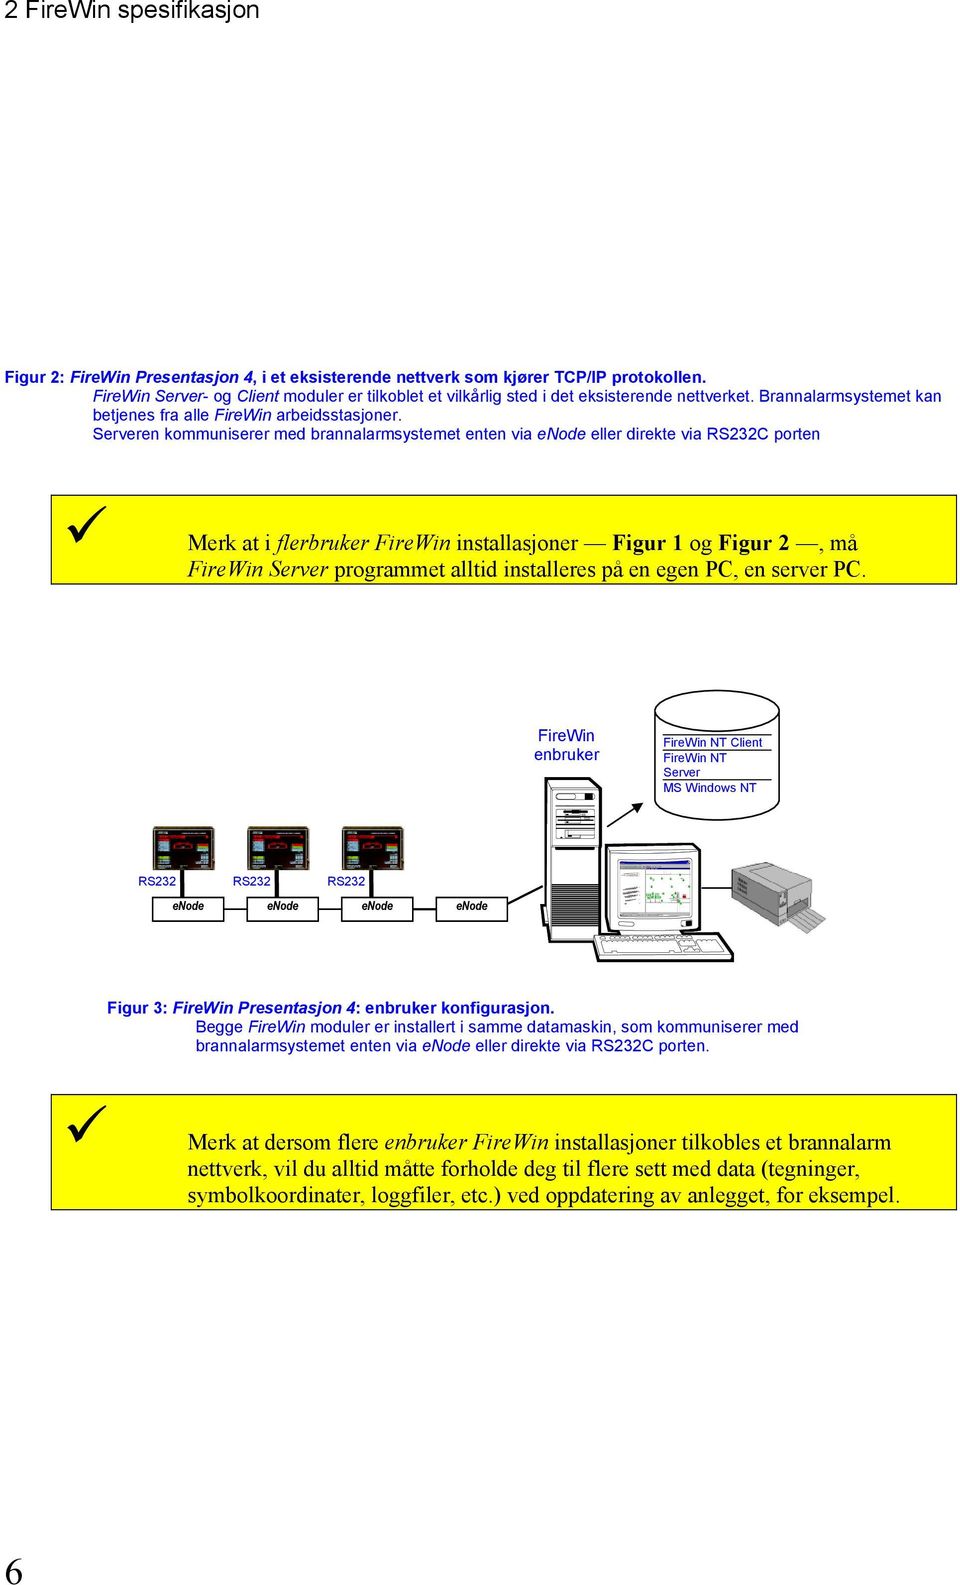 Serveren kommuniserer med brannalarmsystemet enten via enode eller direkte via RS232C porten Merk at i flerbruker FireWin installasjoner Figur 1 og Figur 2, må FireWin Server programmet alltid